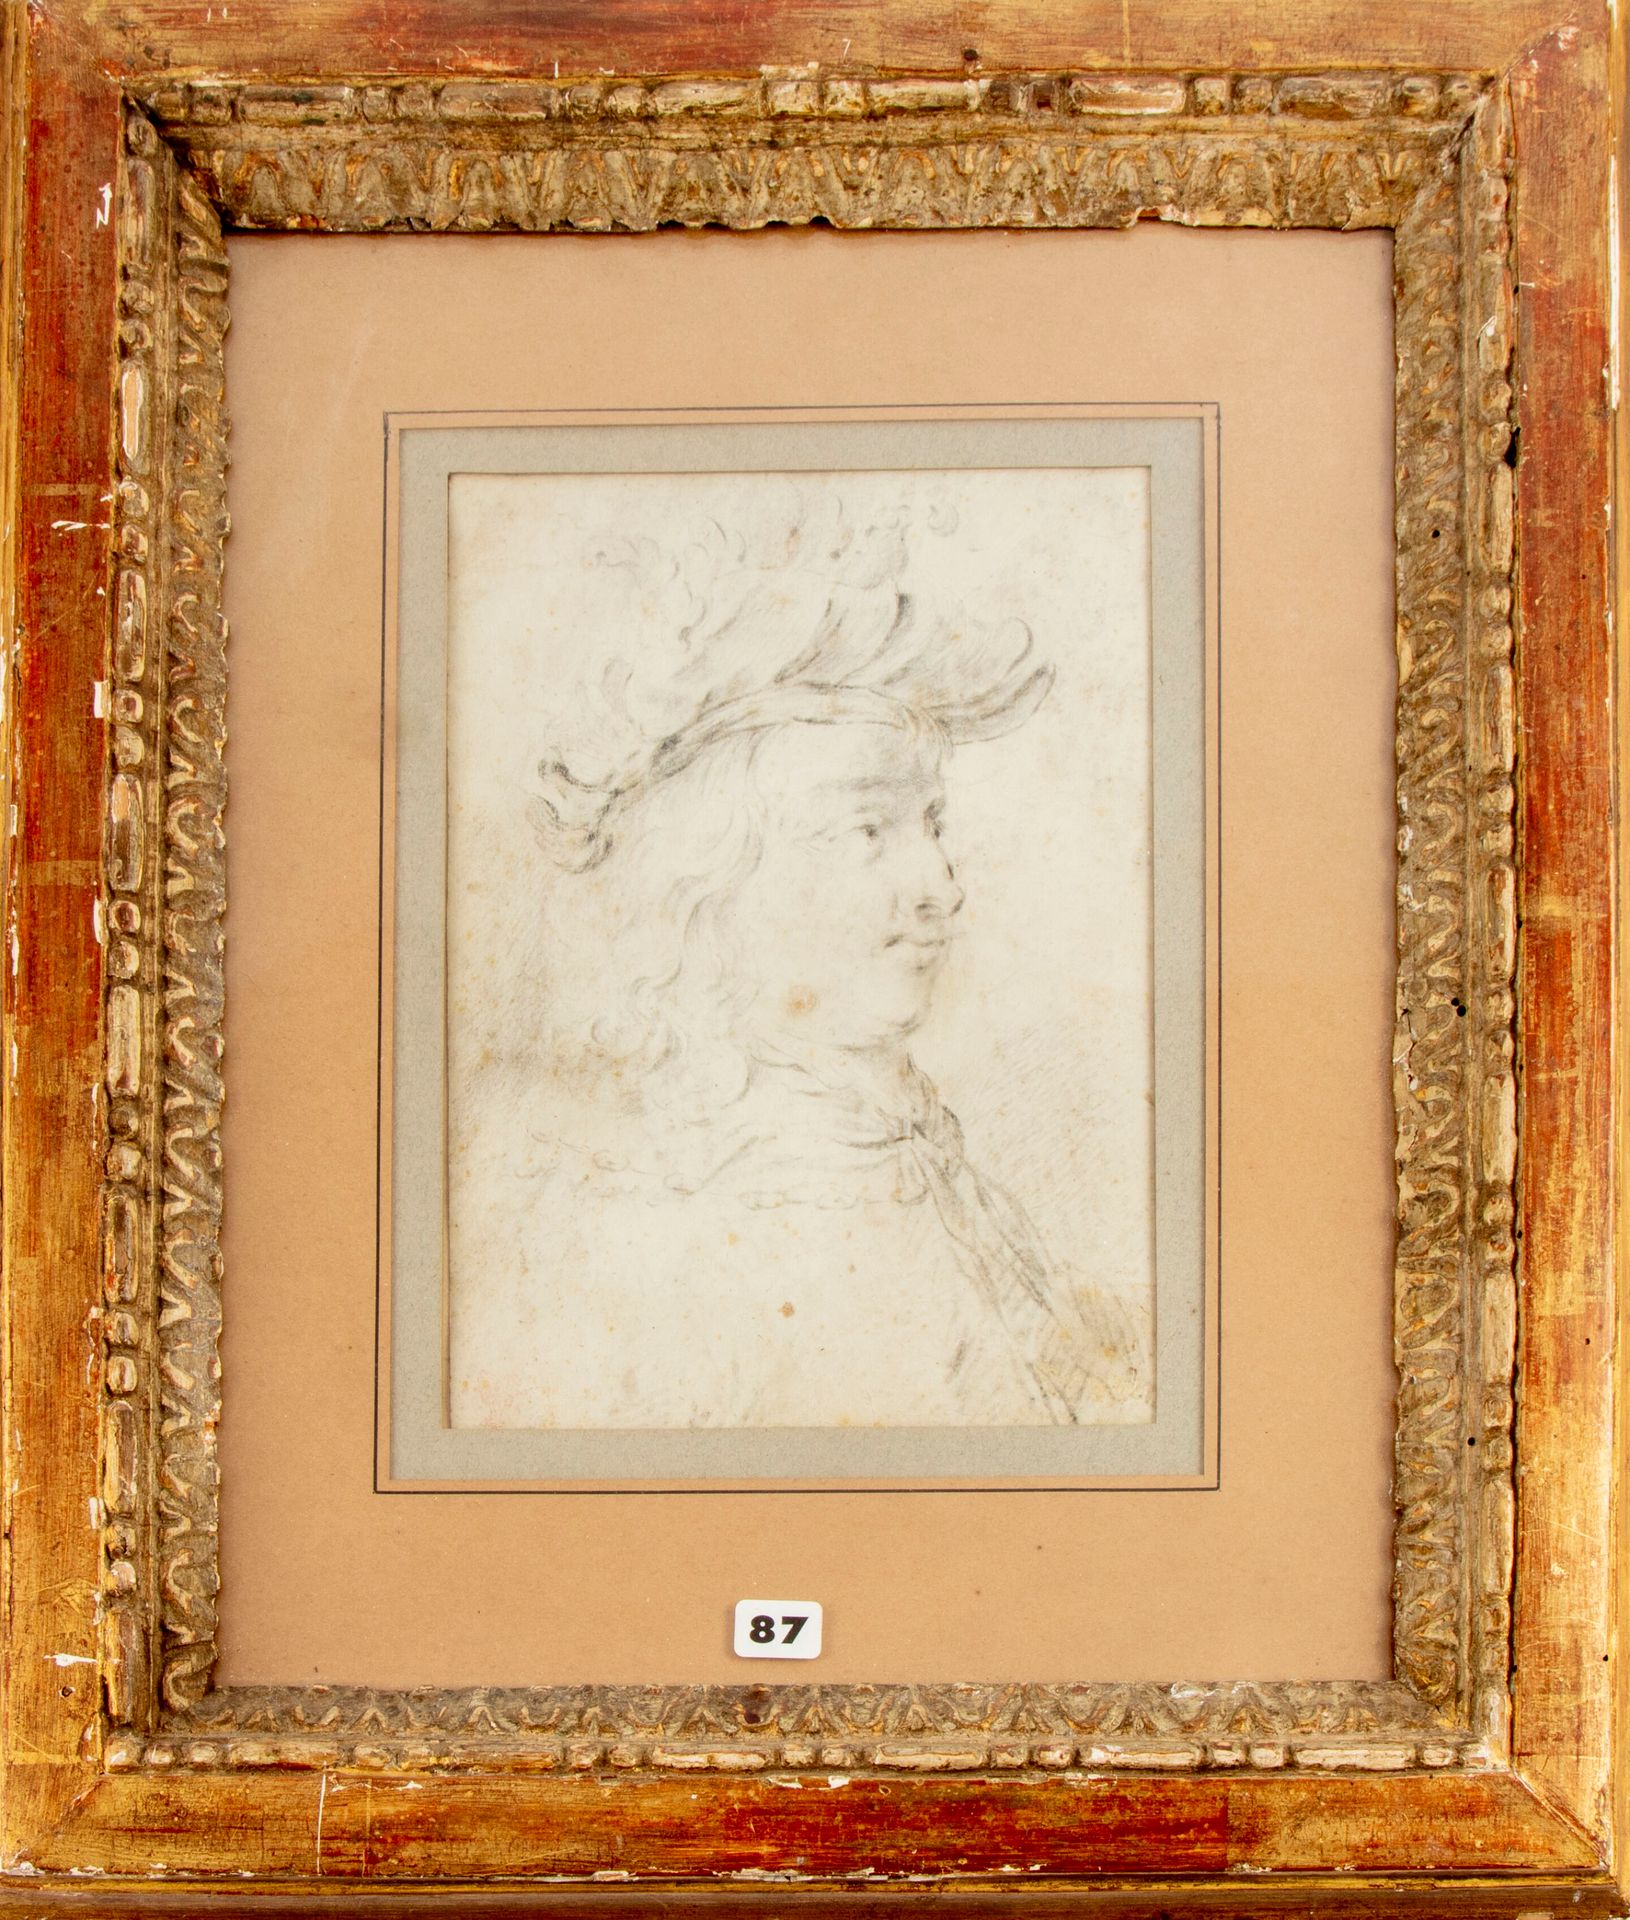 ECOLE DU NORD ECOLE du NORD du XVIIe - attribué à Frans VAN MIERIS 

Portrait d'&hellip;